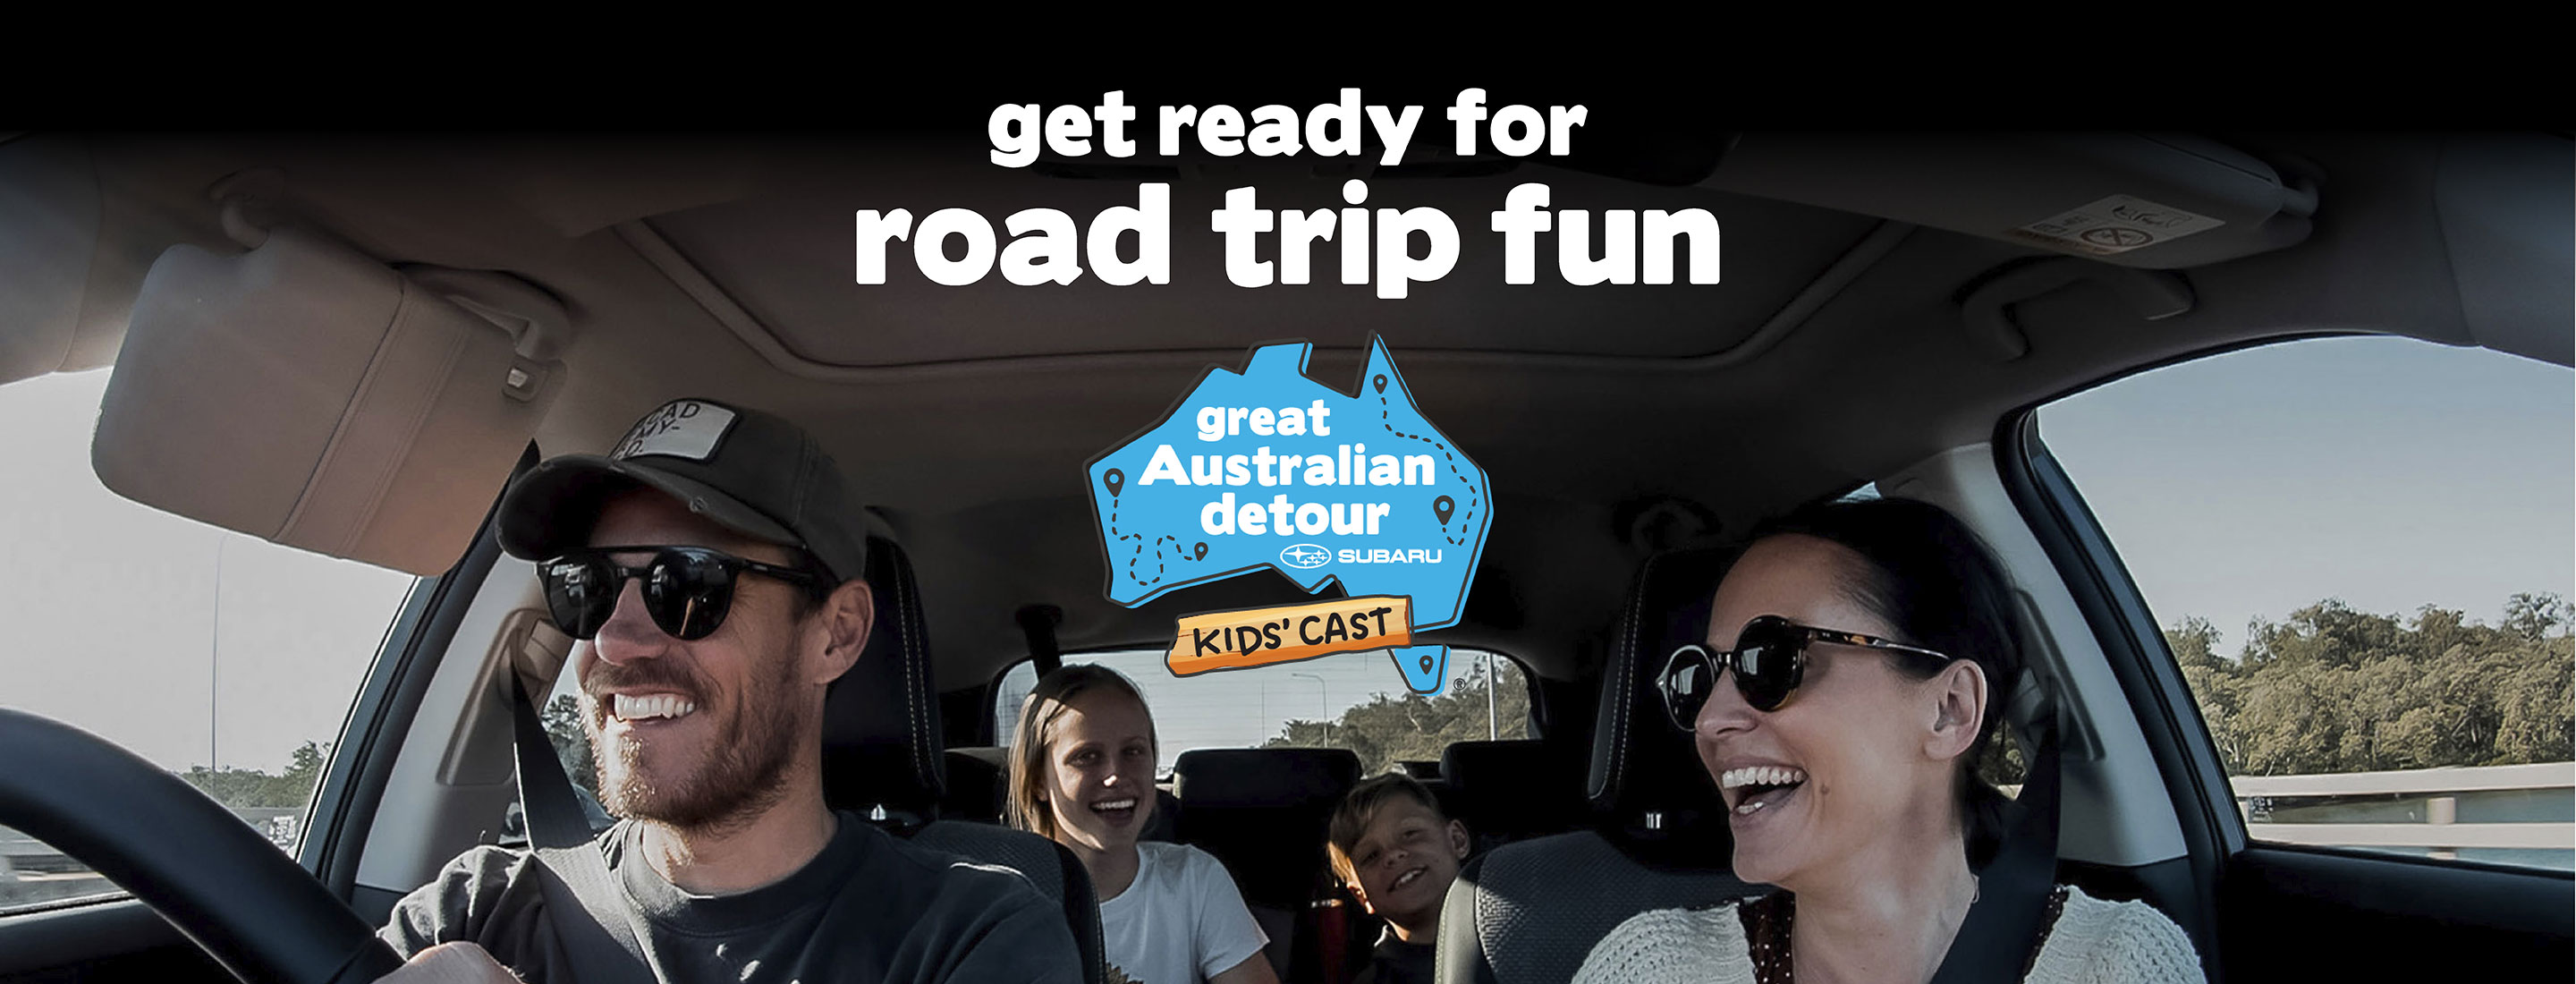 Great Australian Detour - Kidscast | Subaru Australia